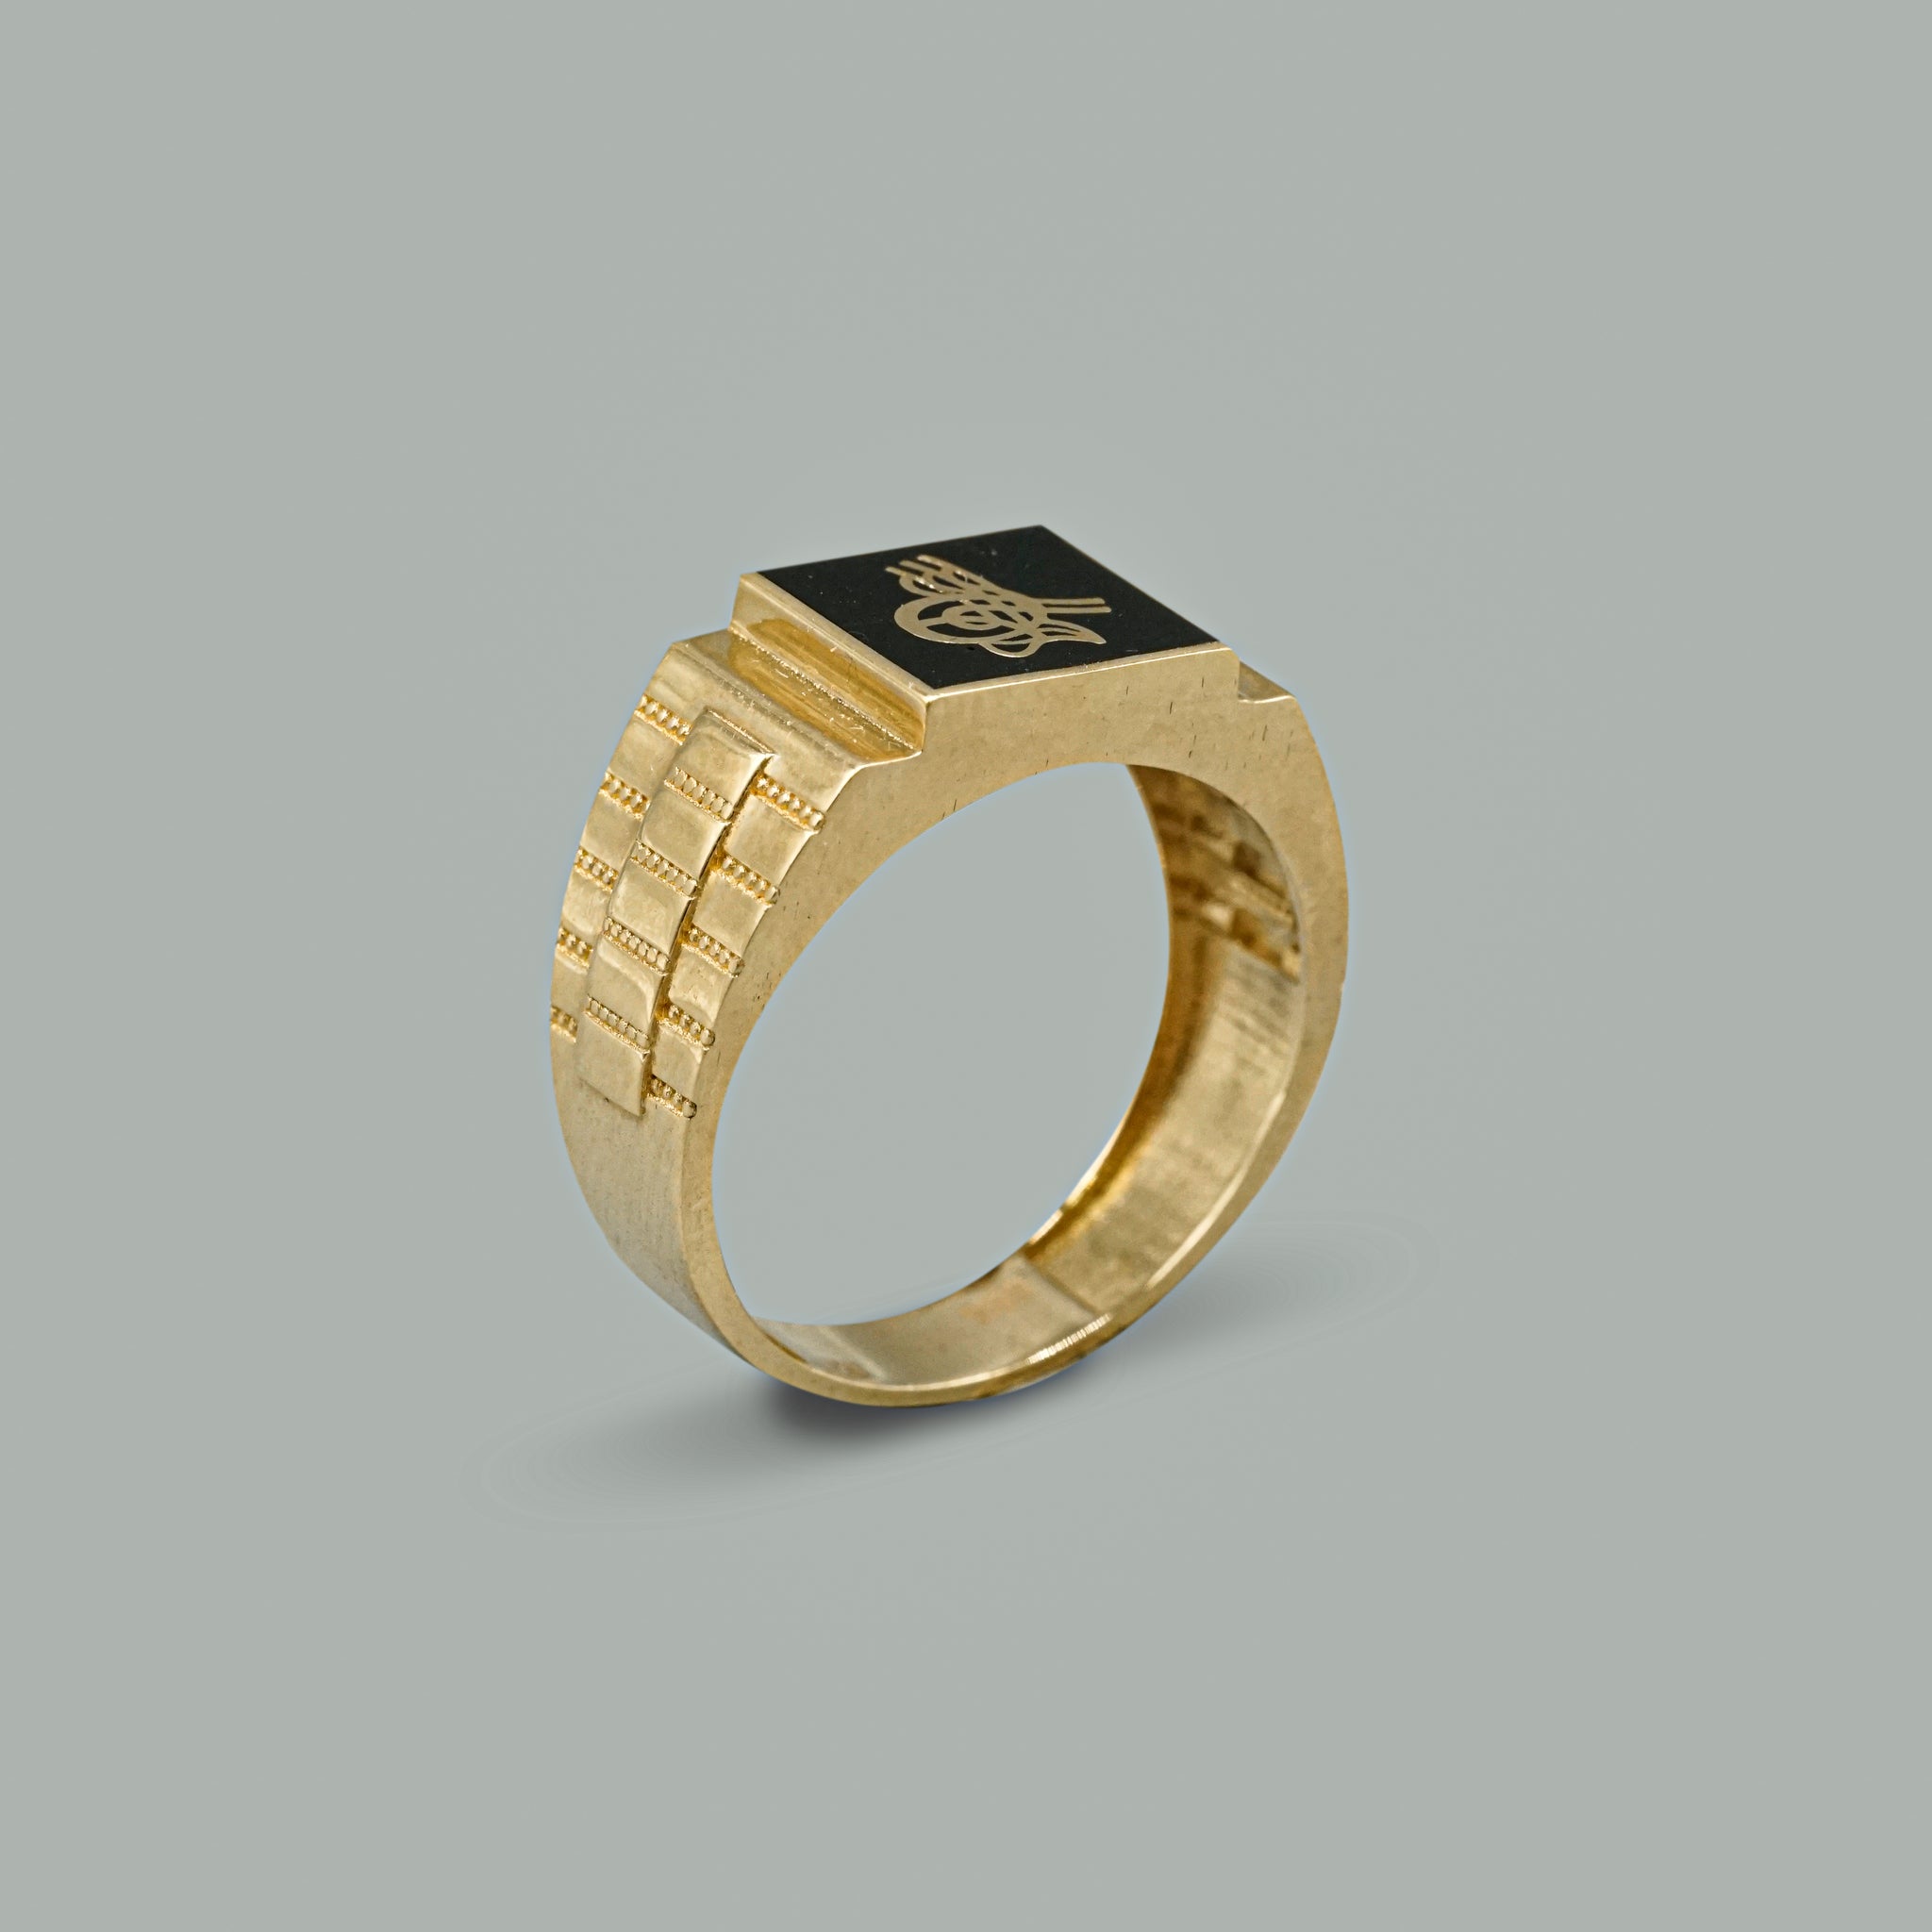 Herren Ring 14 Karat 585 Gelbgold mit schwarzem Osmanli Tura Emaille Stein